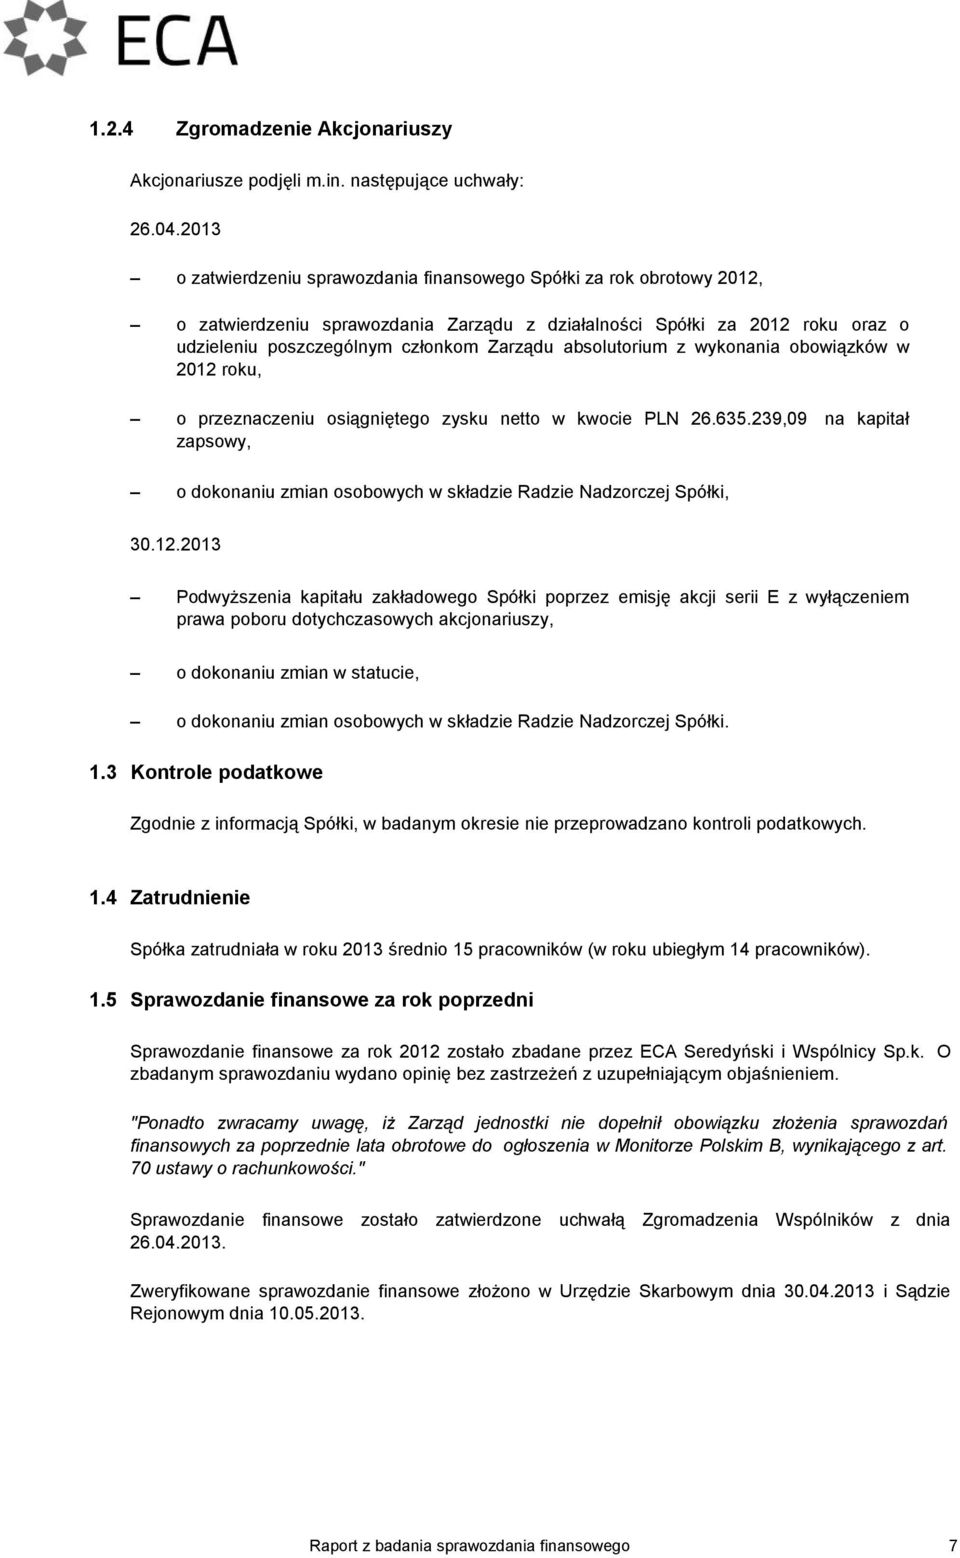 absolutorium z wykonania obowiązków w 2012 roku, o przeznaczeniu osiągniętego zysku netto w kwocie PLN 26.635.